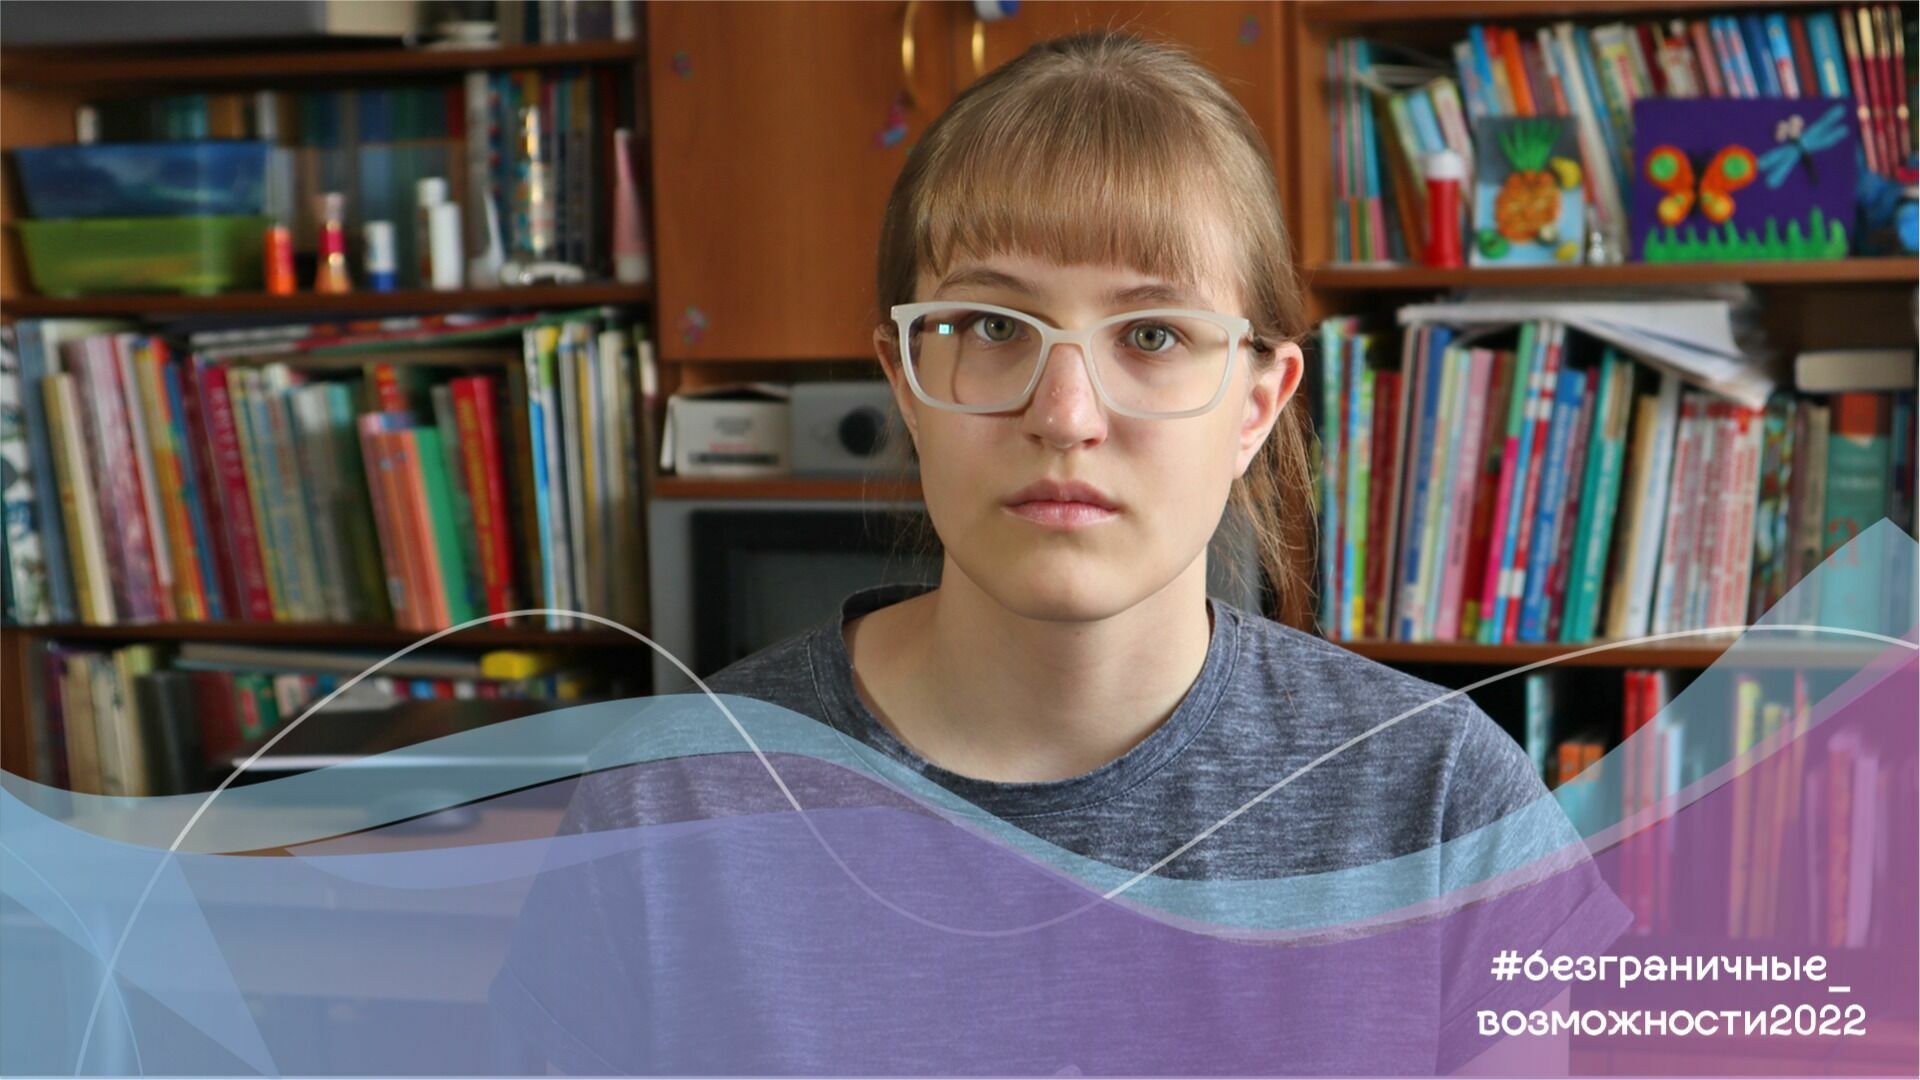 Аня Верепчан из Омска мечтает стать пианисткой и певицей и покорить музыкальный олимп